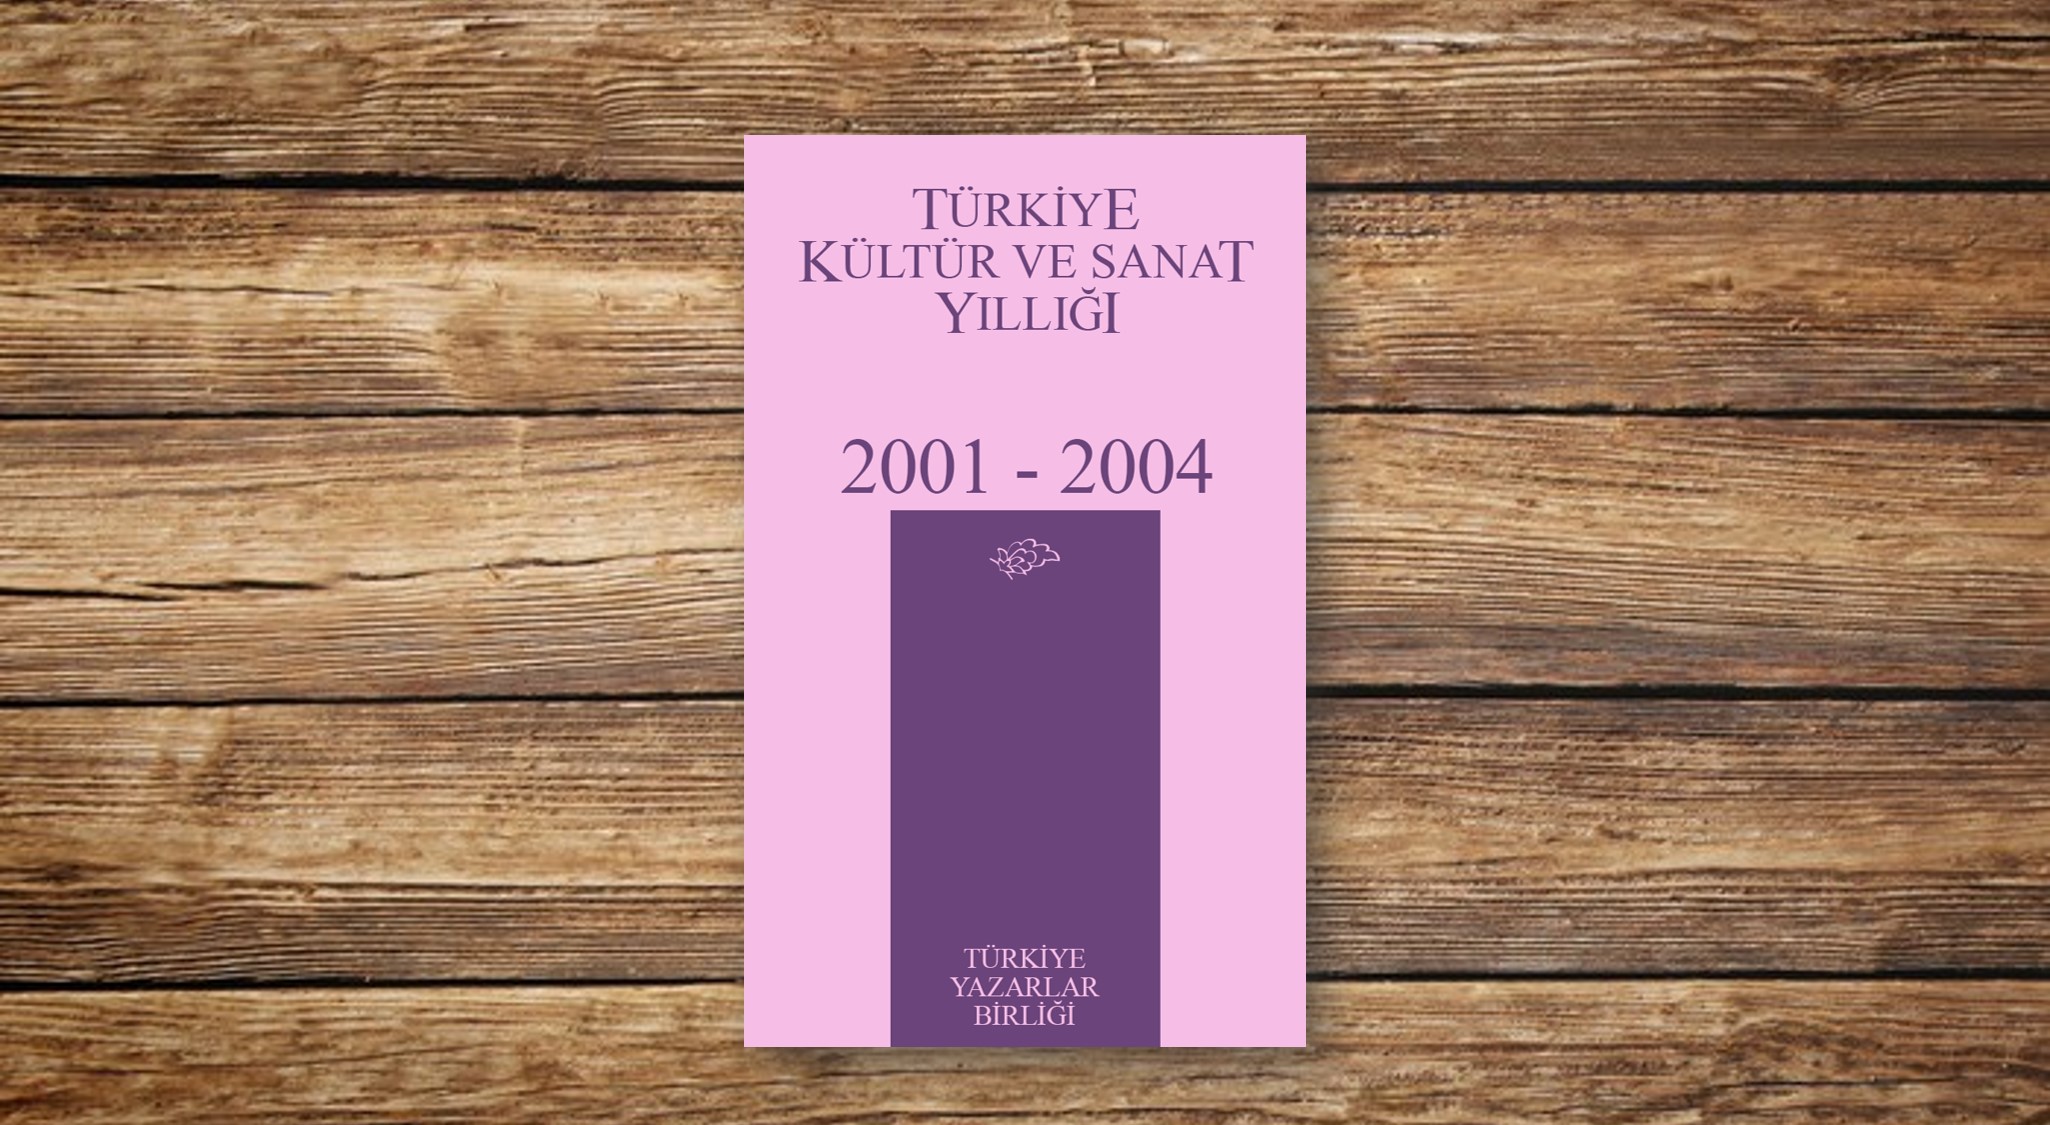 Türkiye Kültür ve Sanat Yıllığı 2001-2004